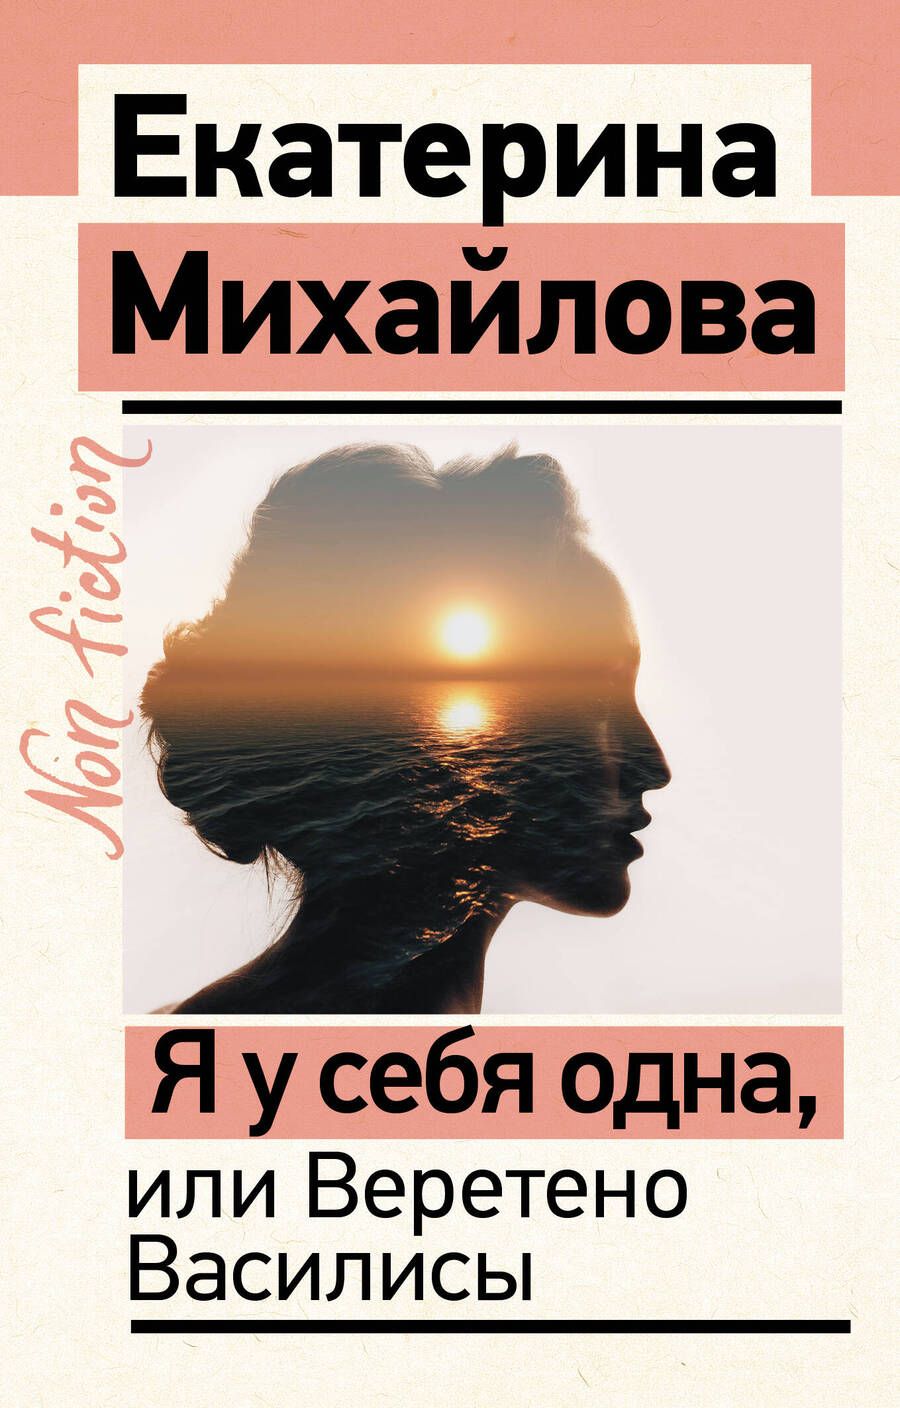 Обложка книги "Михайлова: Я у себя одна, или Веретено Василисы"